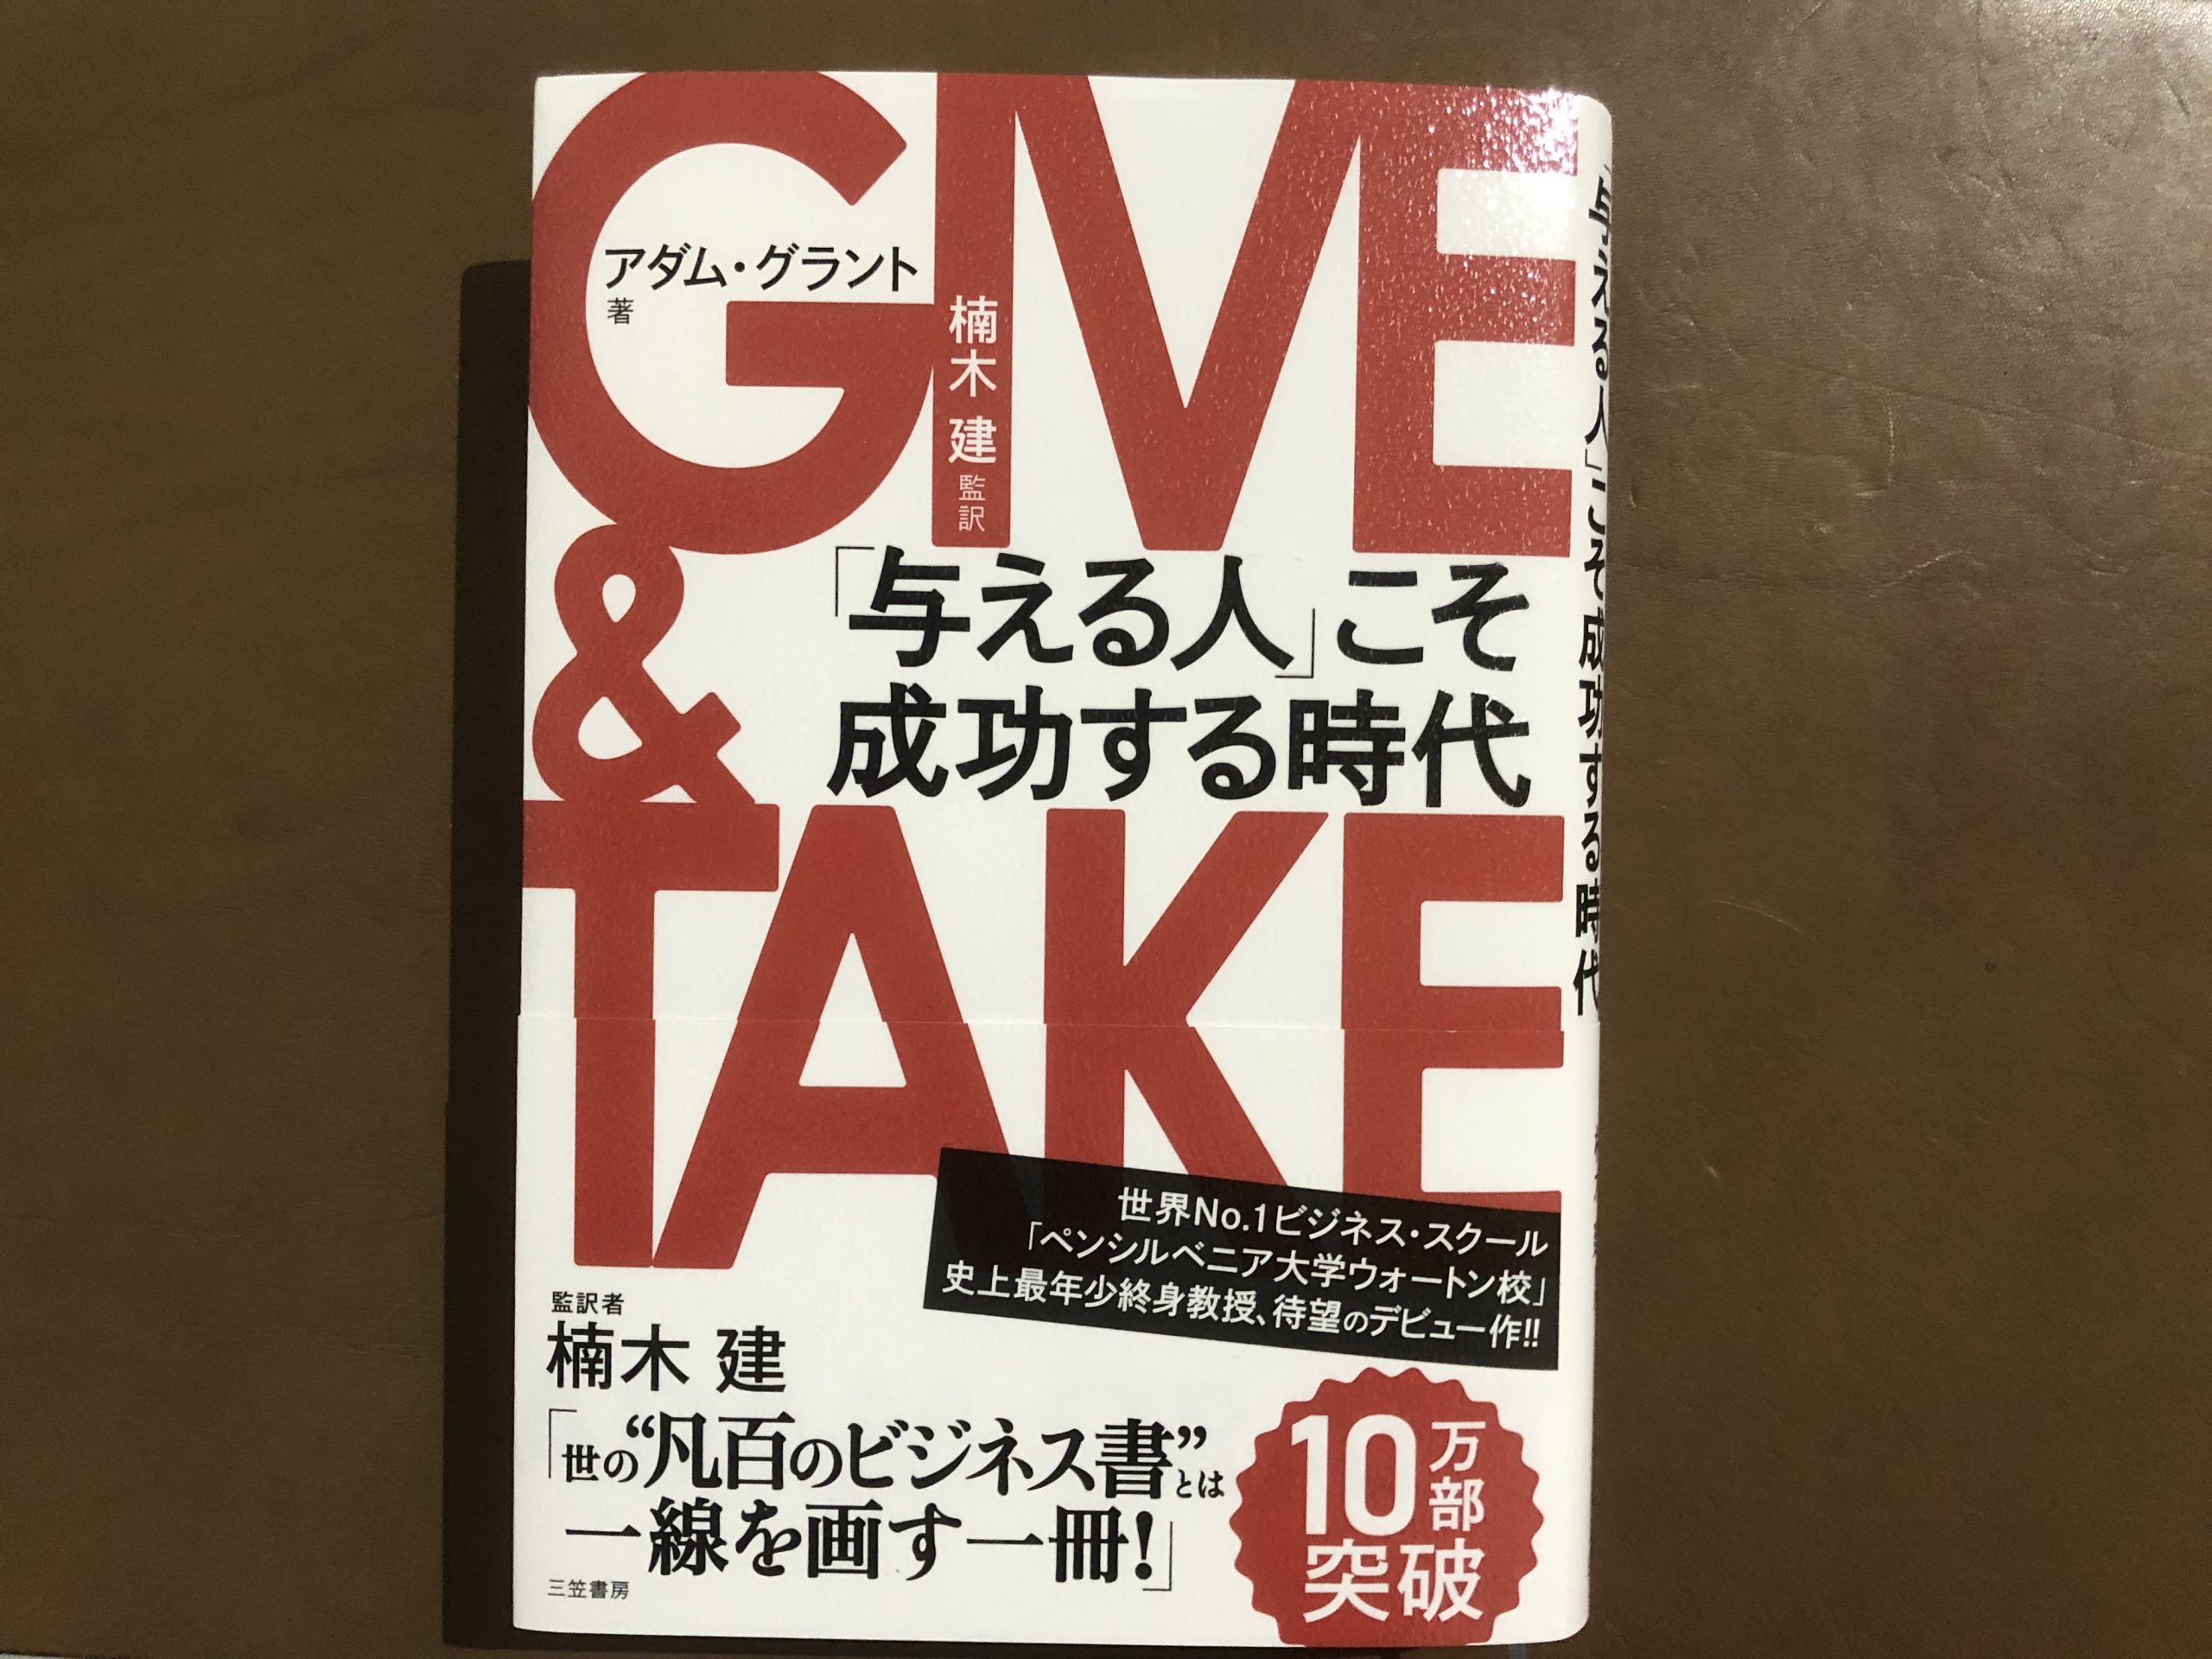 新時代の成功哲学【GIVE&TAKE】与えること